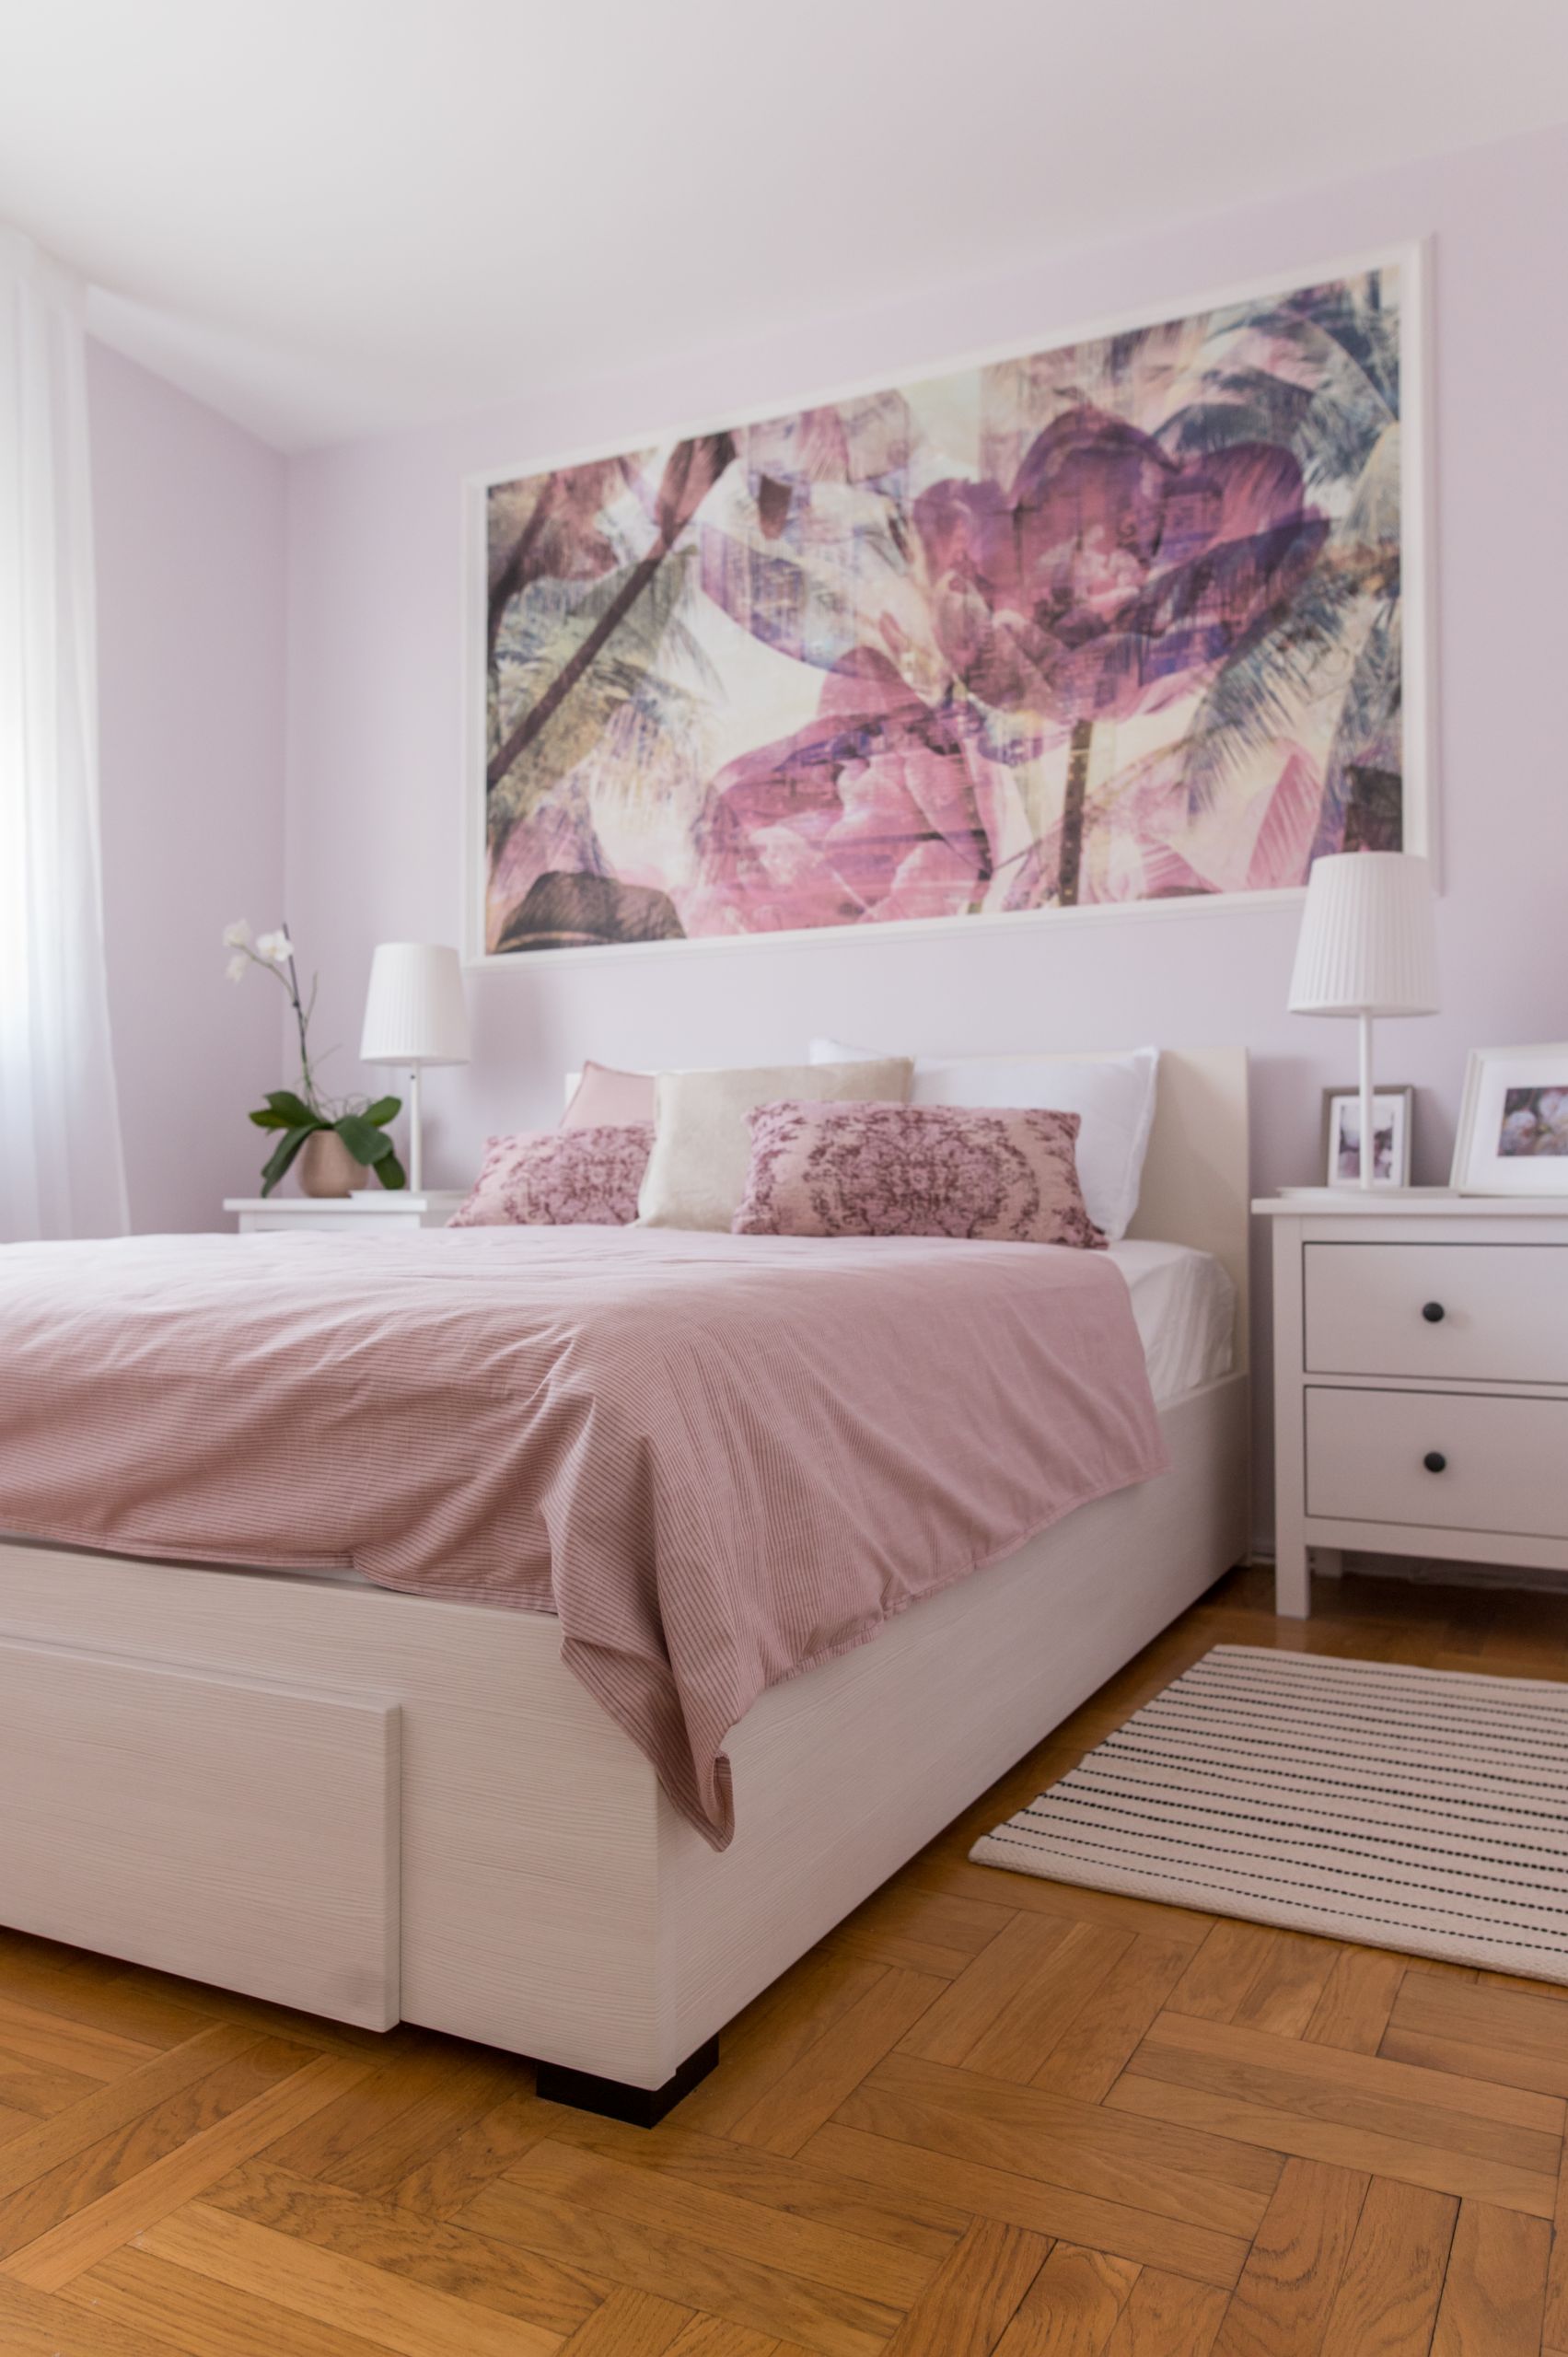 Phòng ngủ lựa chọn trắng và hồng pastel làm gam màu chủ đạo. Bức tranh khổ lớn điệu đà nổi bật trên nền tường trắng cũng như chăn mỏng và gối dựa làm điểm nhấn trên chiếc giường vậy.